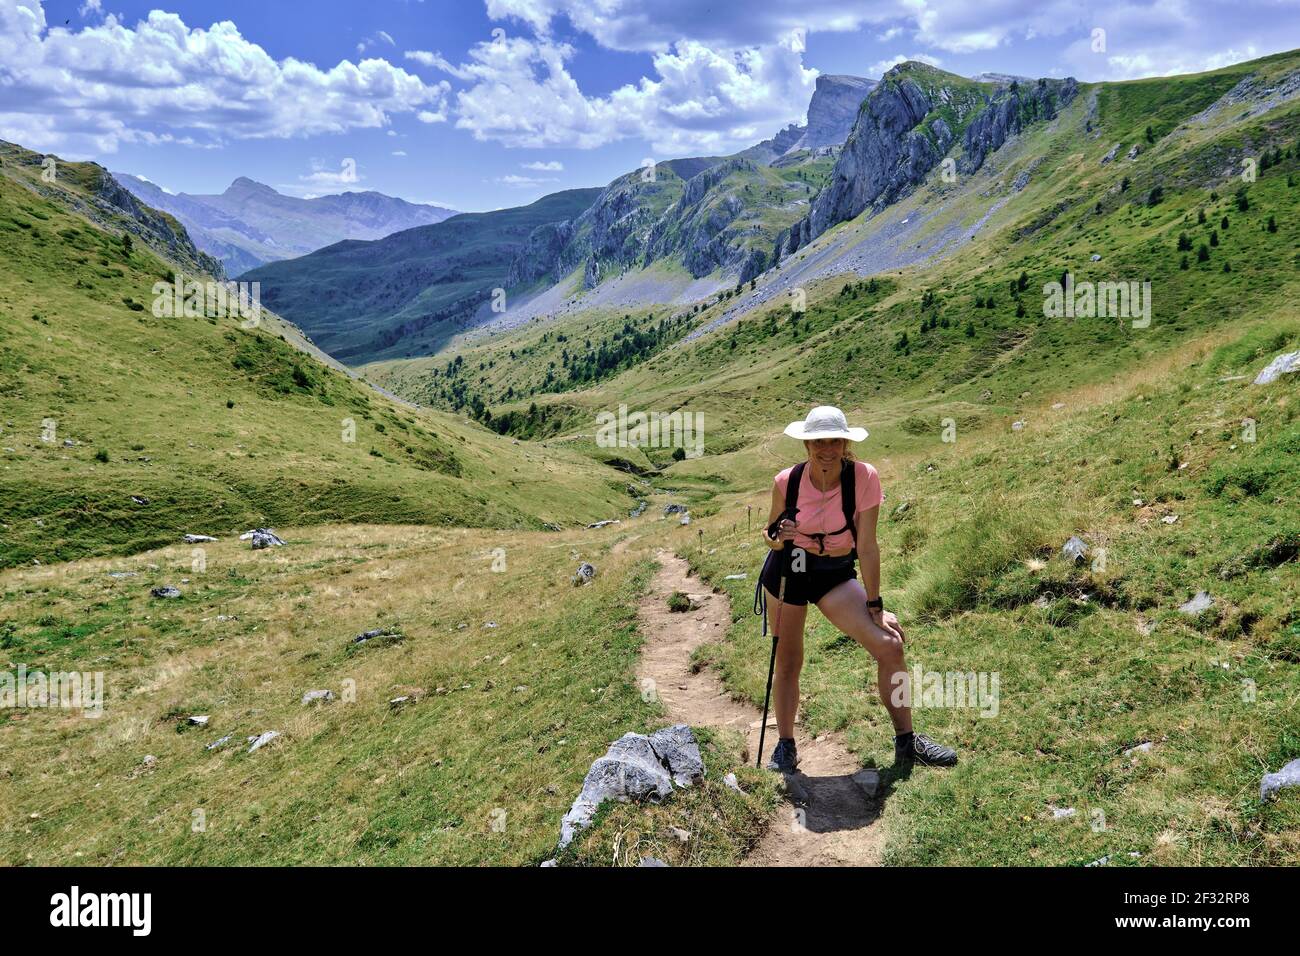 Donna escursionista in un paesaggio di montagne e praterie. Parco Naturale Valles Occidentales. Valle di Hecho. Catena montuosa dei Pirenei, Huesca, Aragona, Spagna, E. Foto Stock